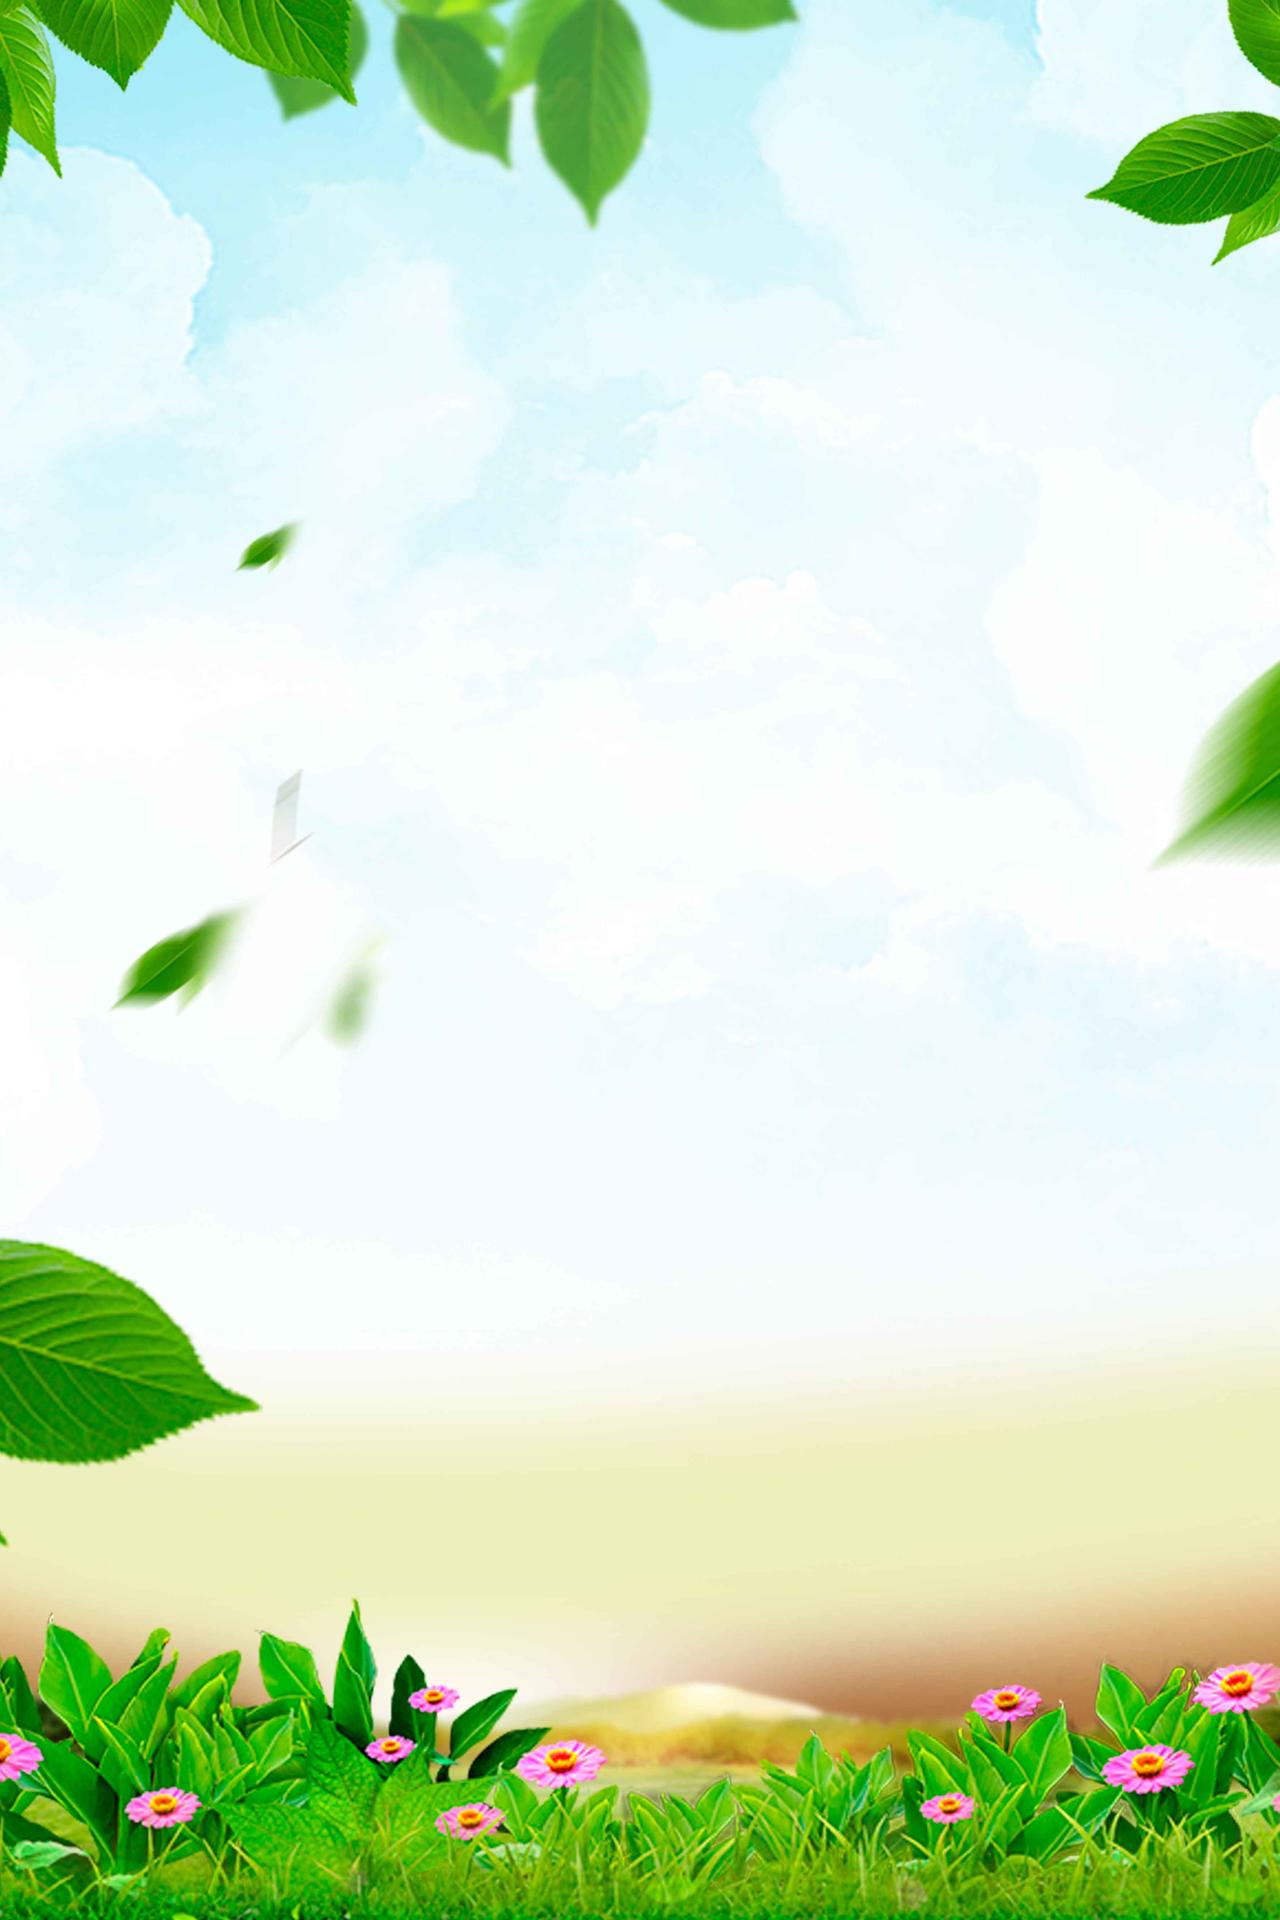 蓝天白云绿叶风景保健品蜂蜜美容养颜海报背景